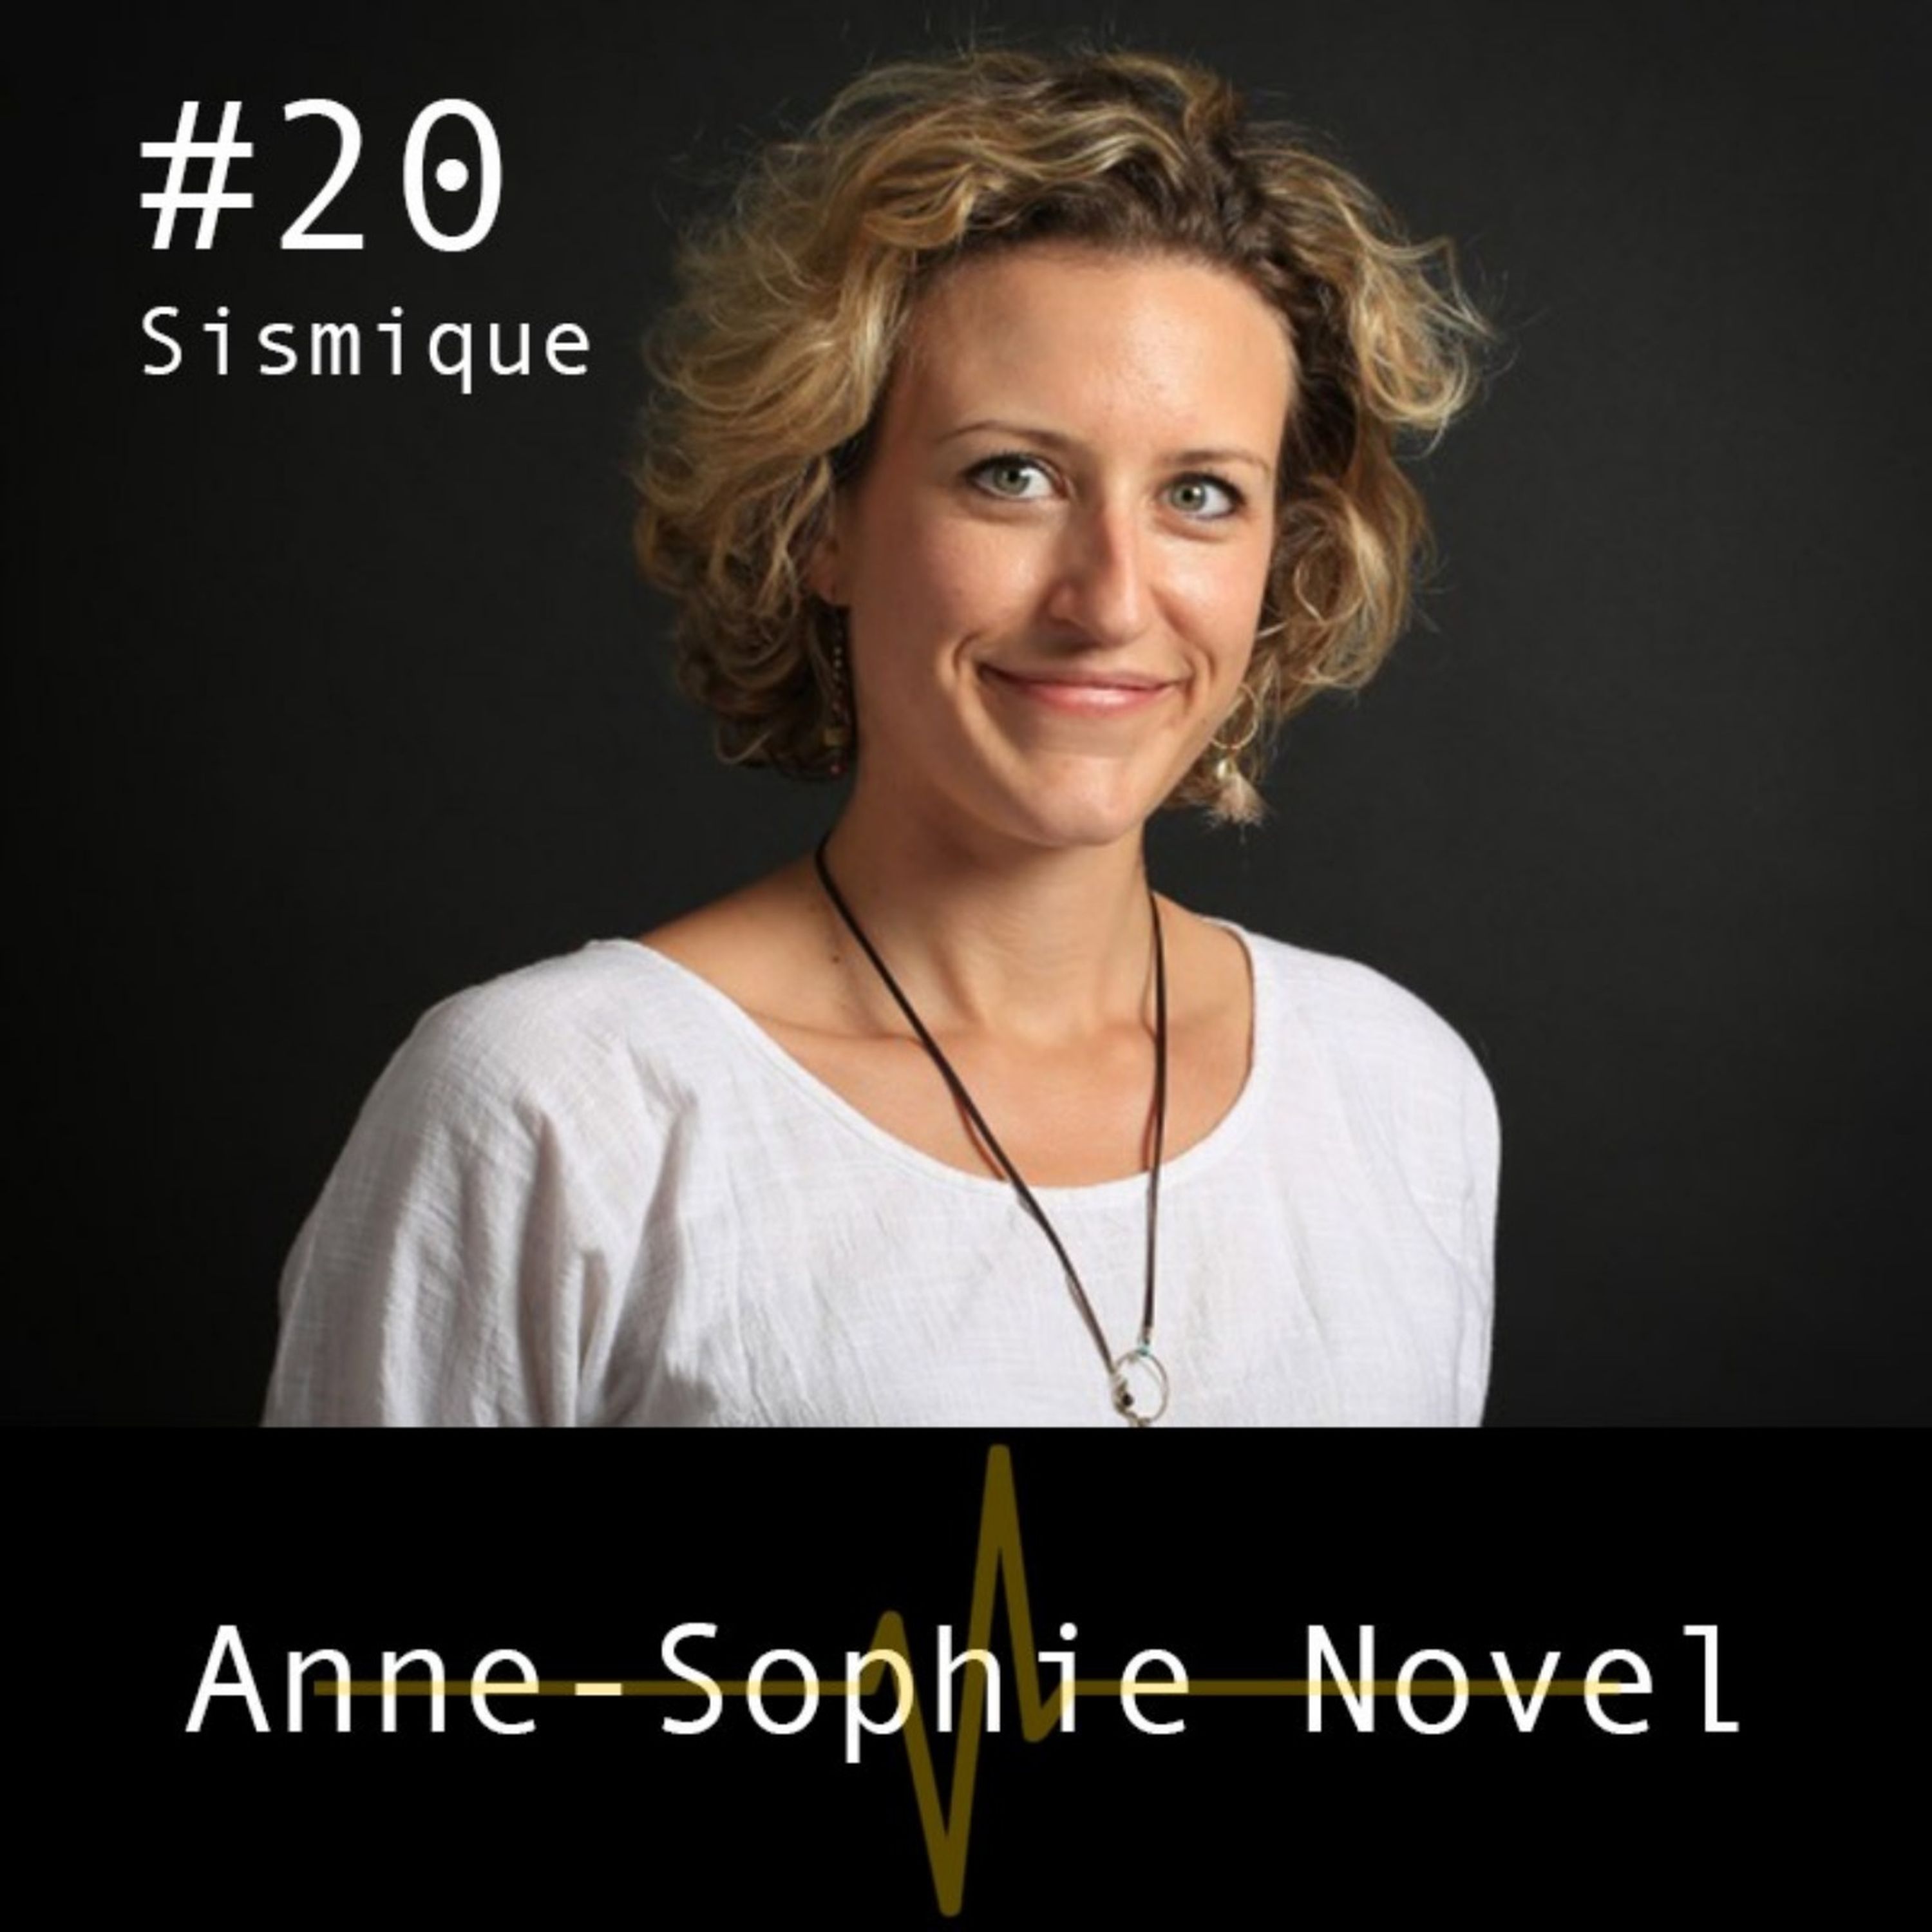 Les Media, le monde et nous - Anne-Sophie Novel